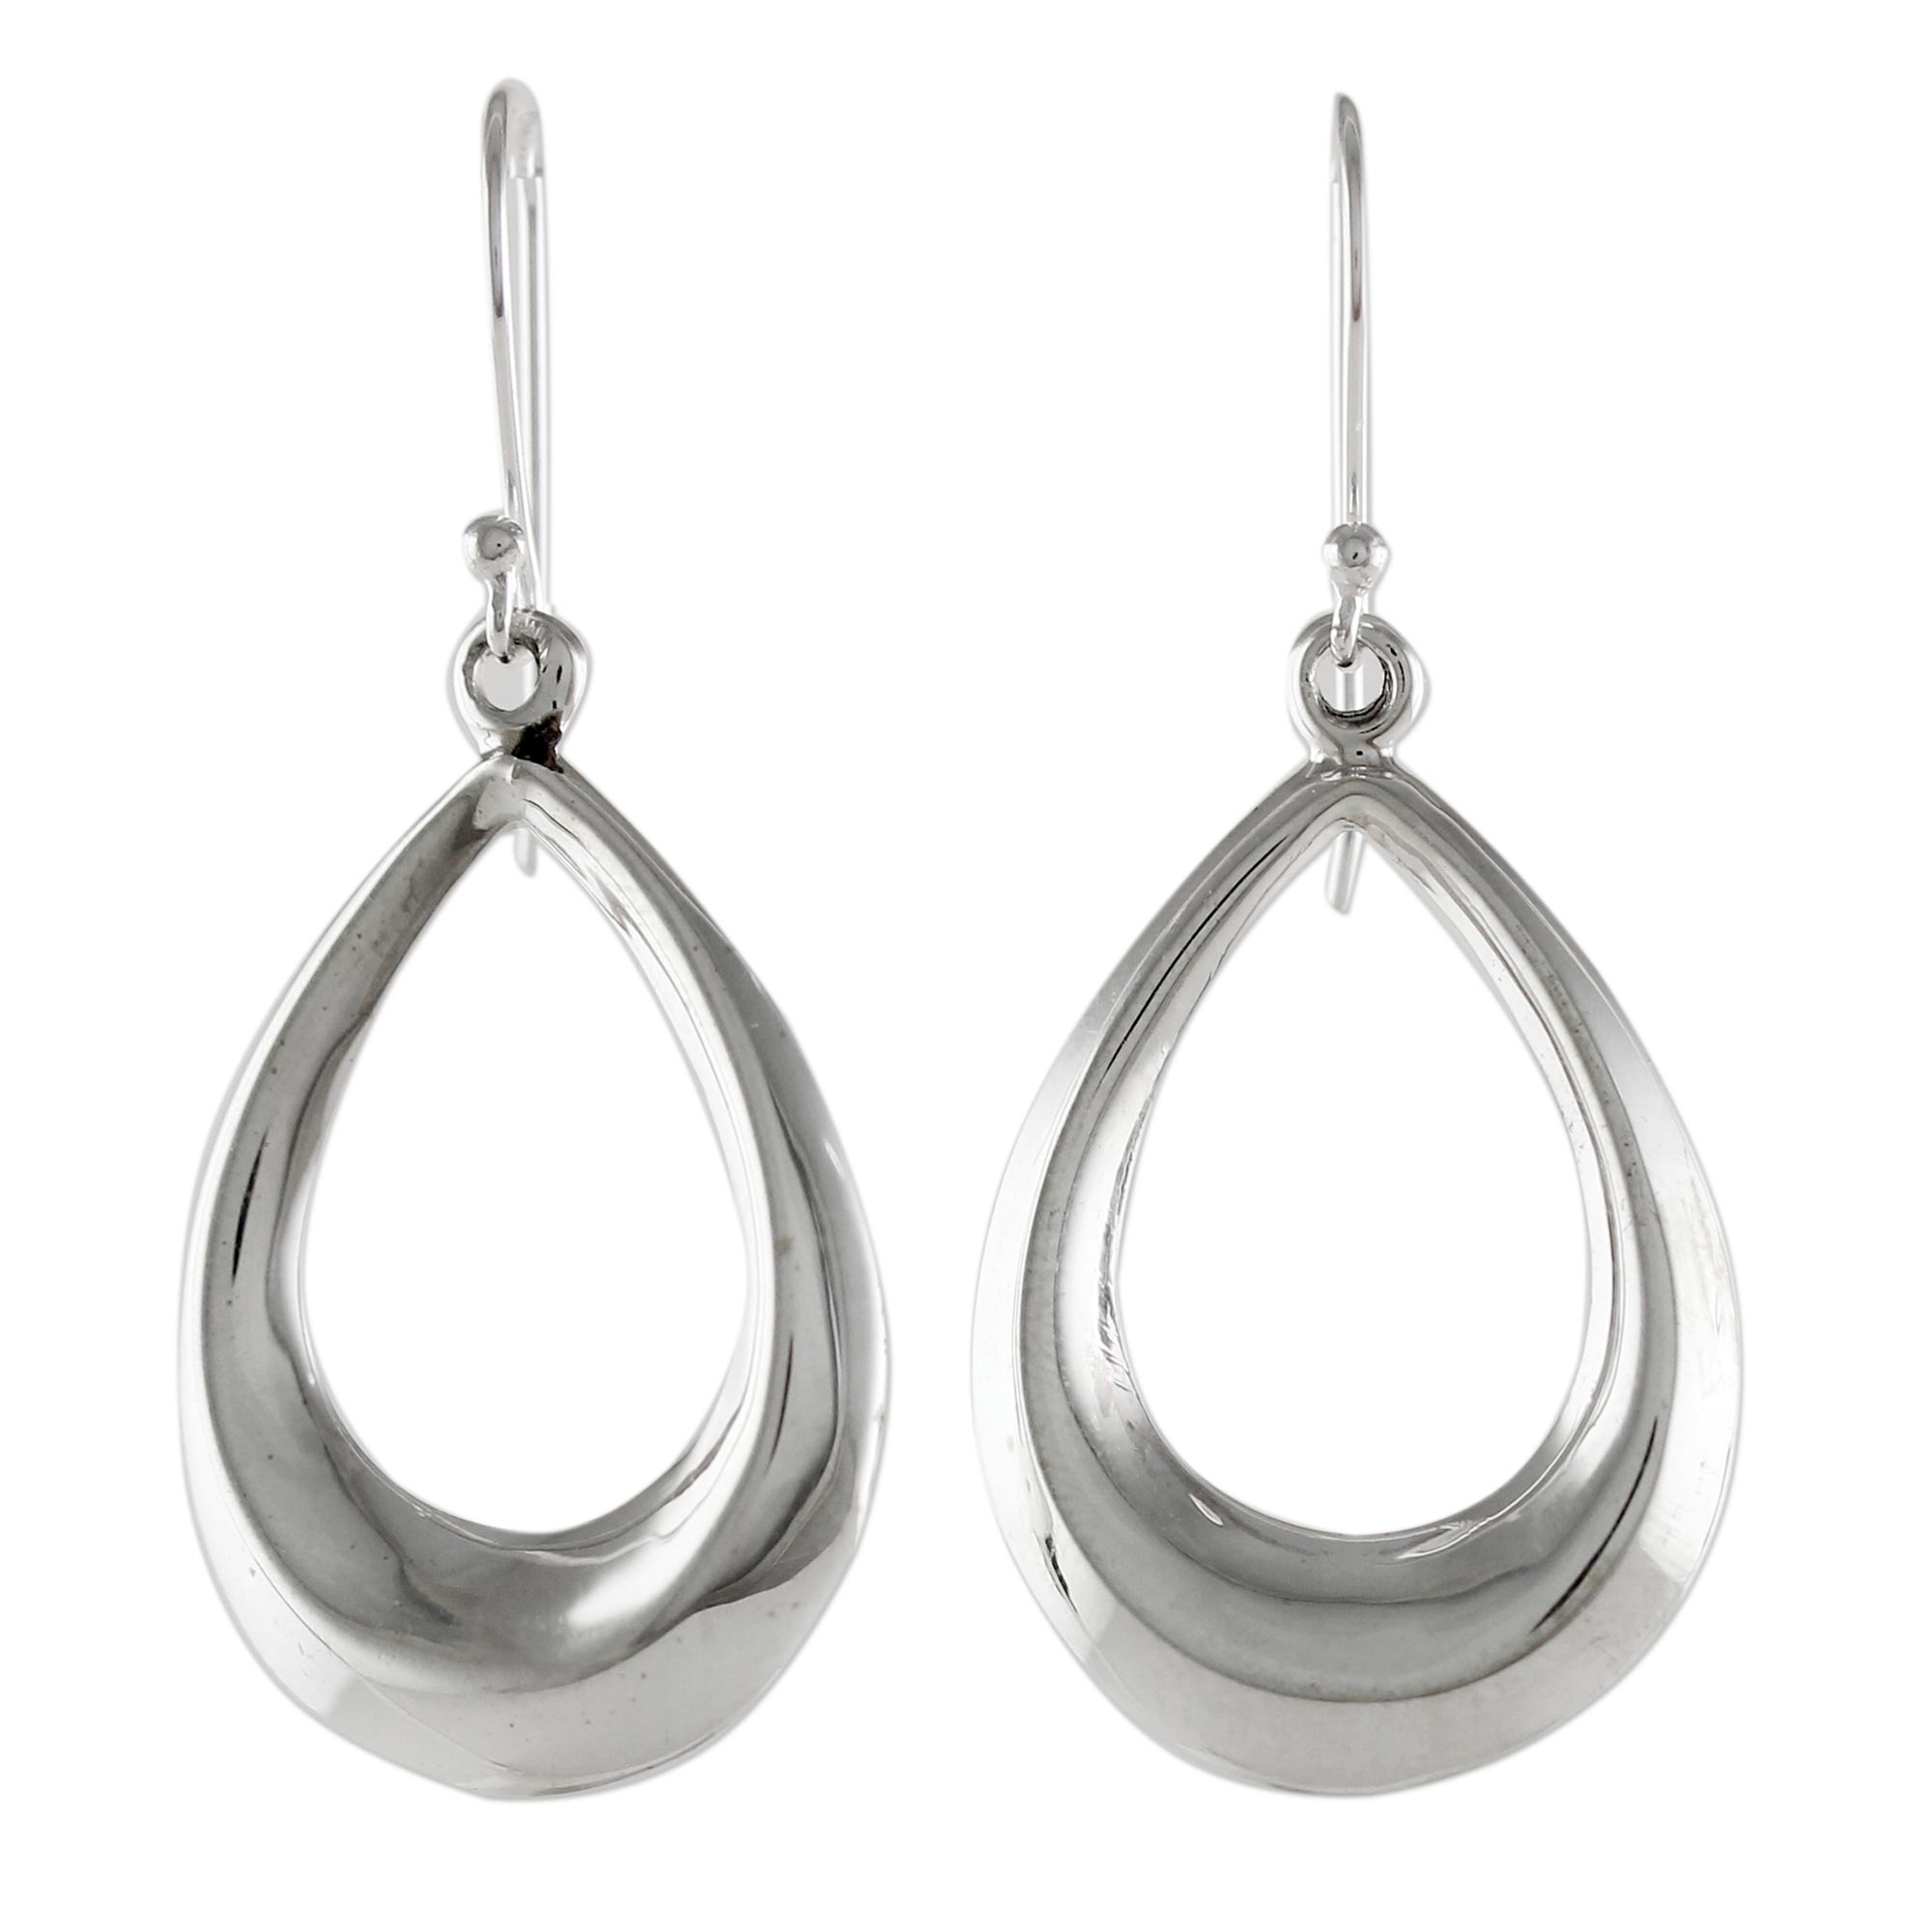 Sterling Silver Teardrop Dangle Earrings from Thailand - Dewy Sheen ...